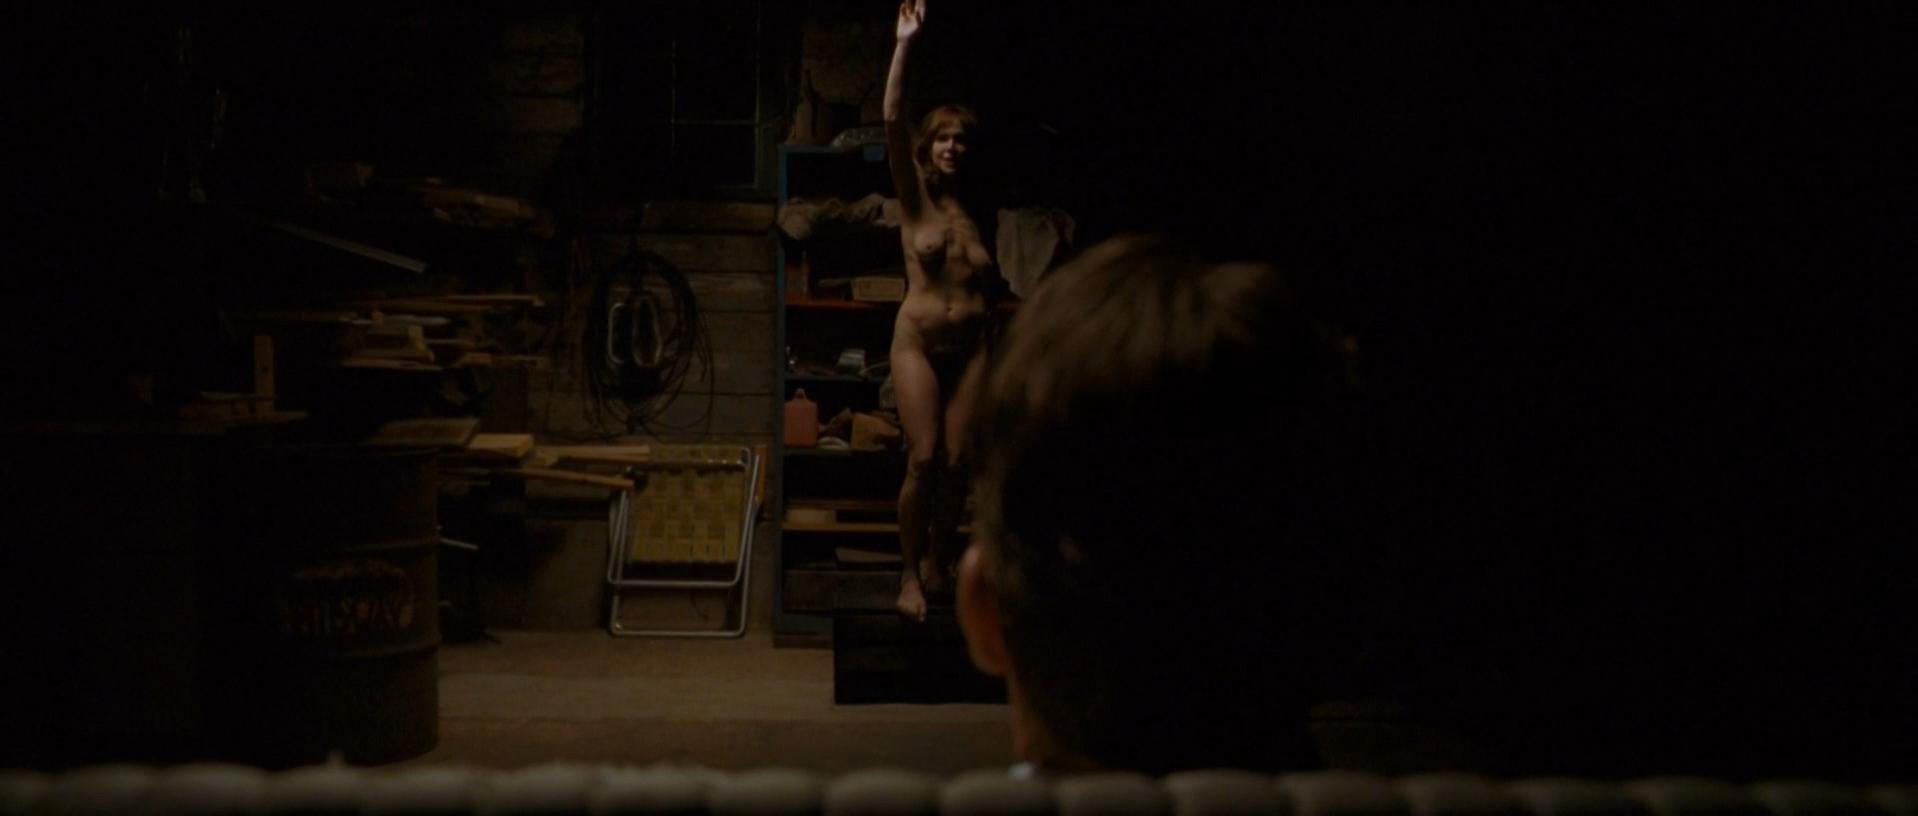 Nude Video Celebs Actress Frances O Connor